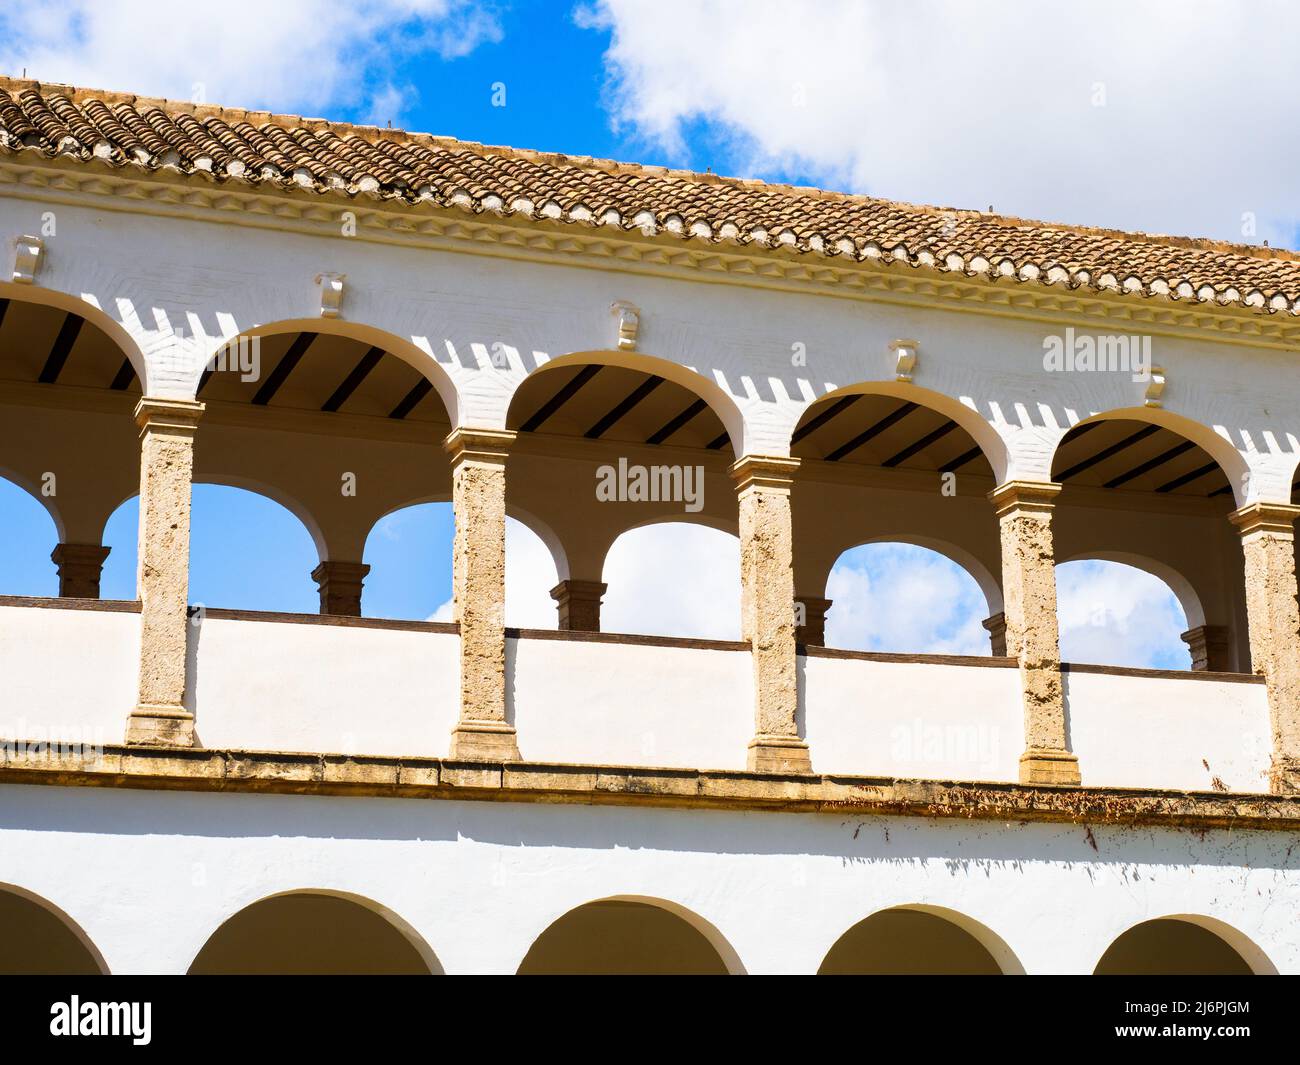 Patio de la Sultana nel complesso Generalife - Alhambra - Granada, Spagna Foto Stock